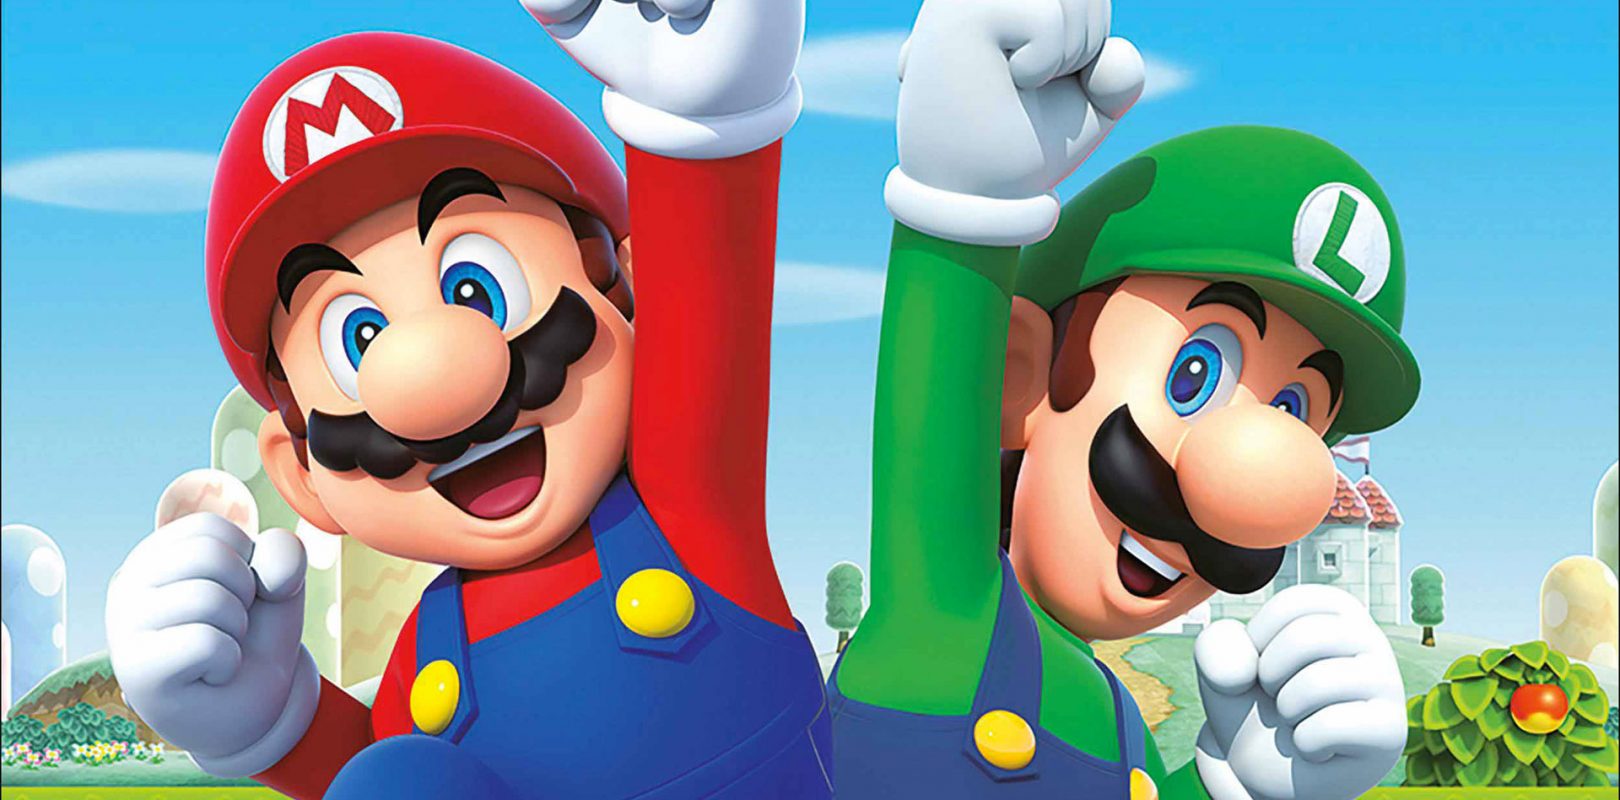 Super Mario: il presidente di Nintendo conferma l'uscita del film nel 2022